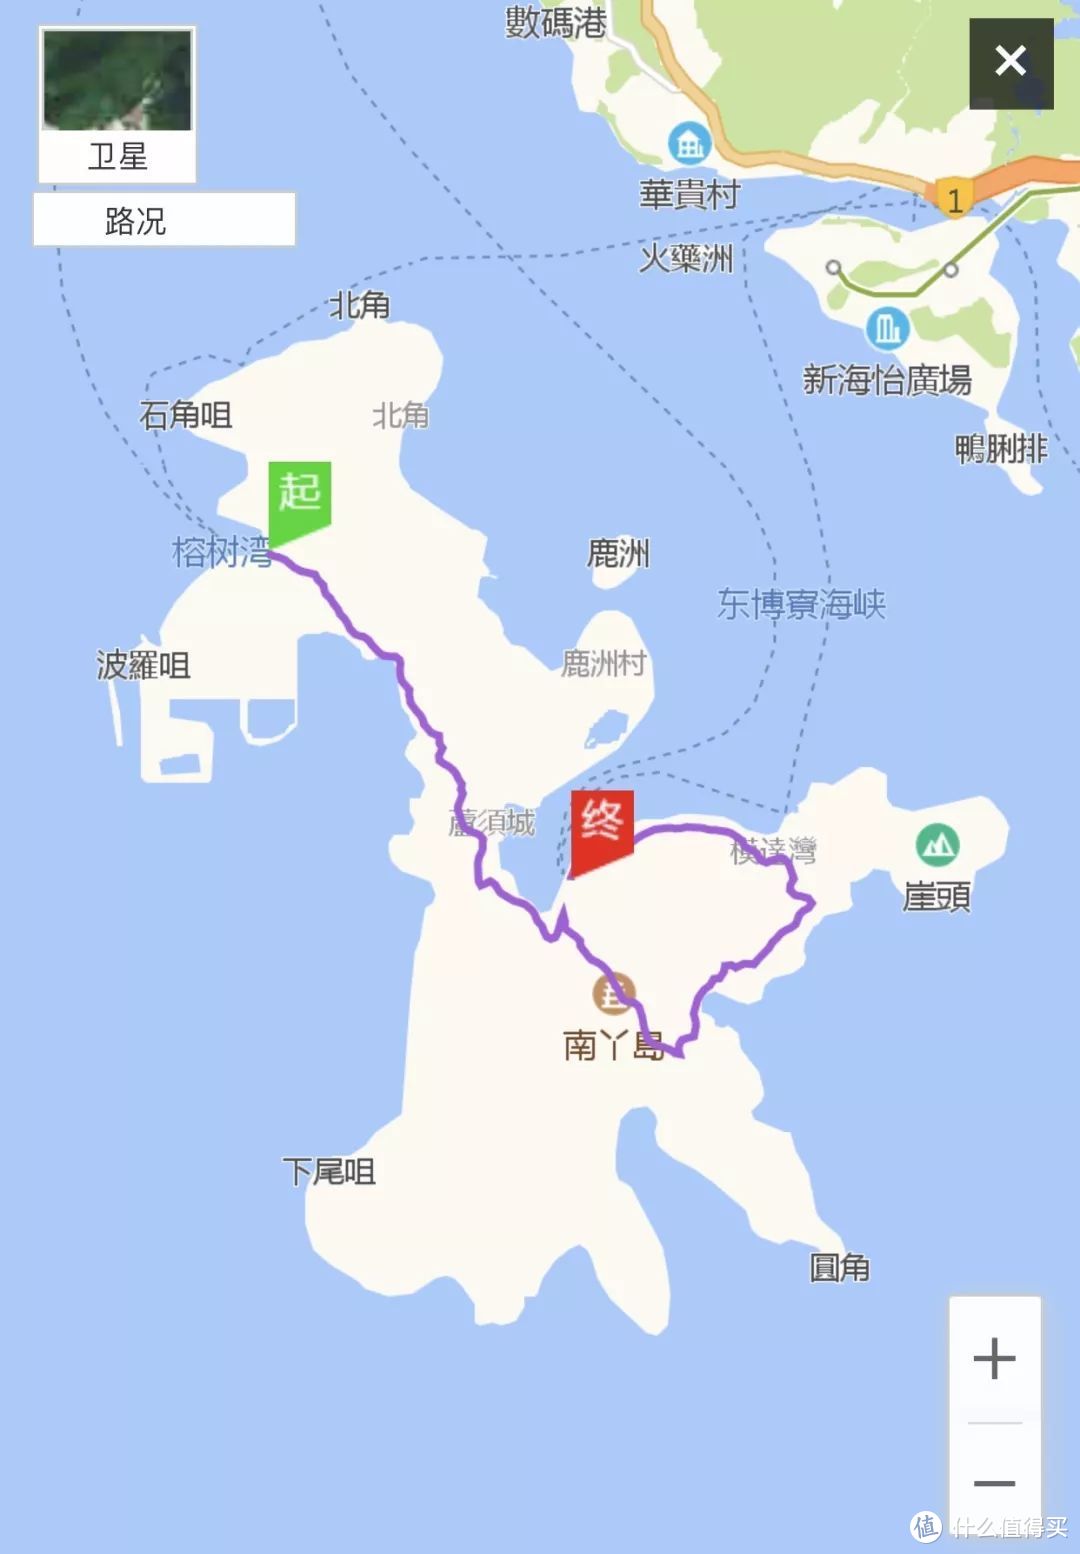 解锁不一样的香港——香港徒步圣地指南